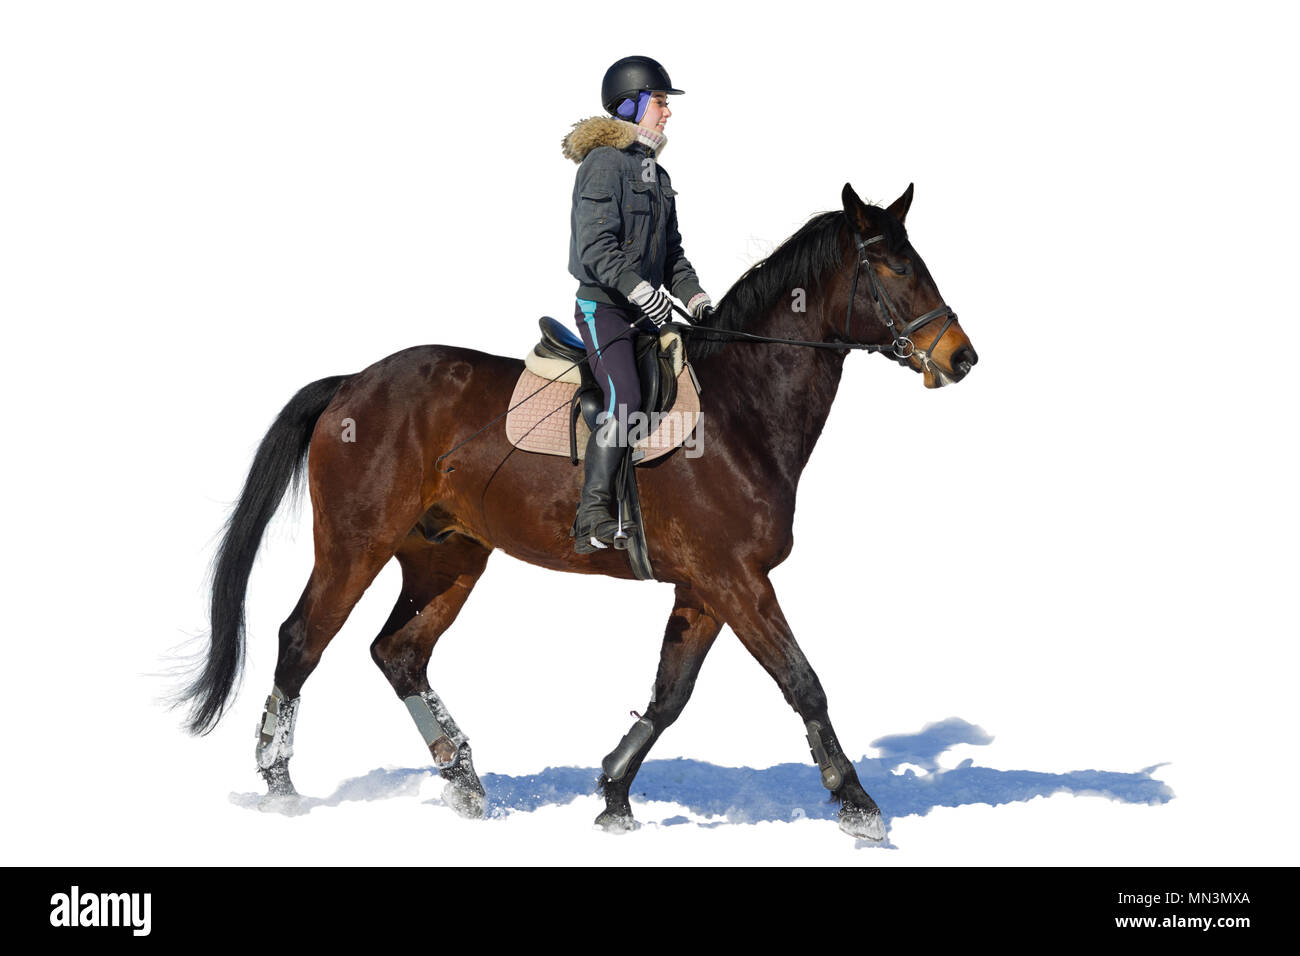 L'équitation. Une femme monte un cheval. La formation. Banque D'Images